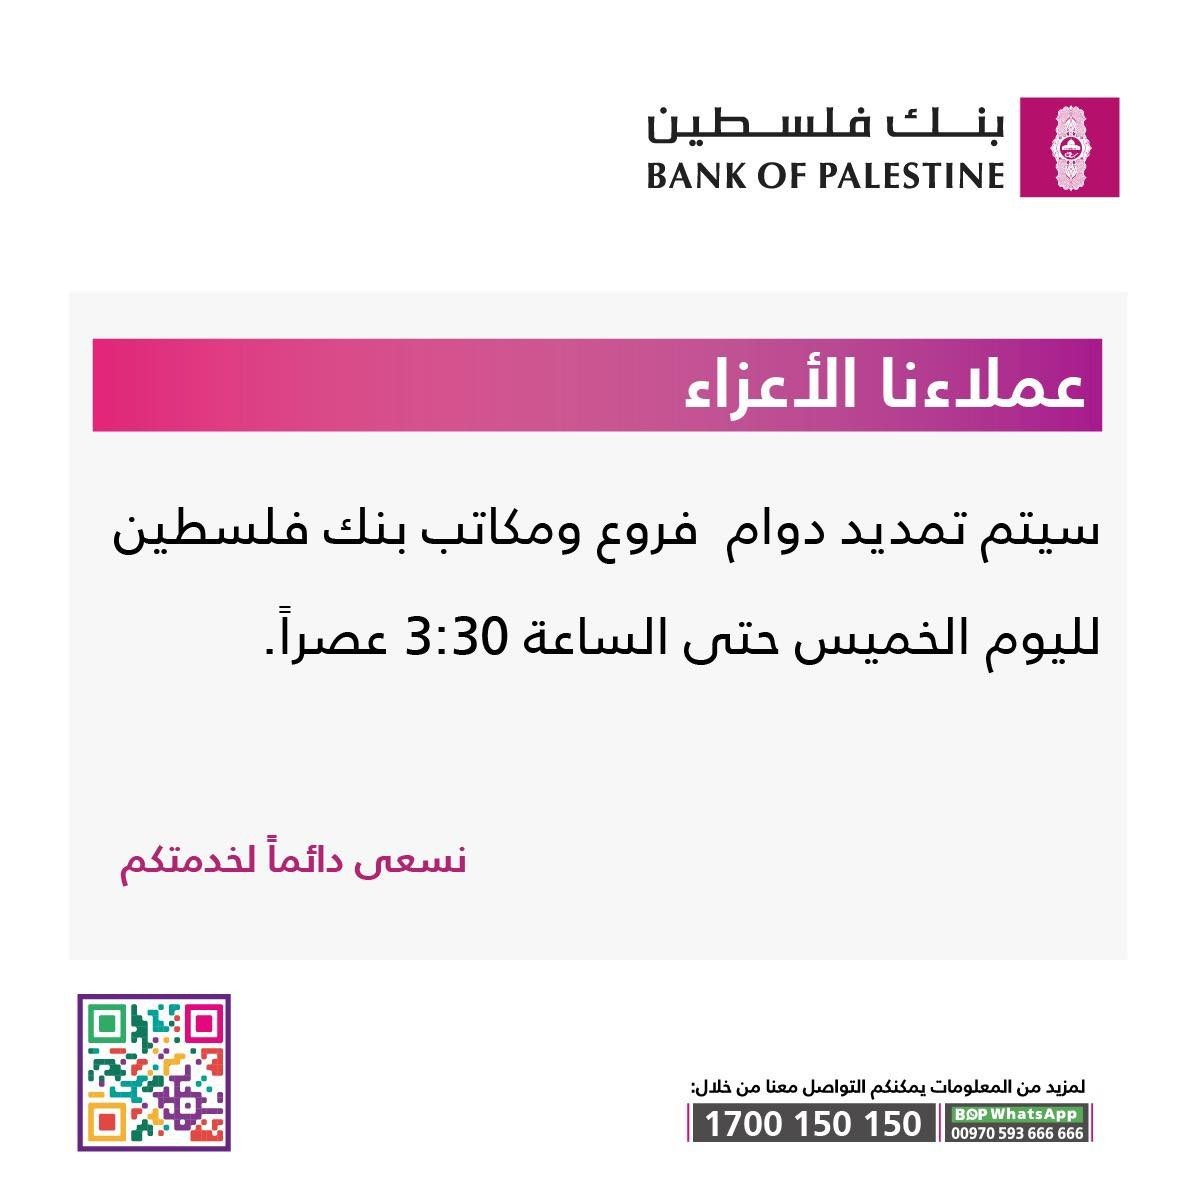 بنك فلسطين يُصدر تنويهًا لعملائه بشأن تمديد الدوام اليوم